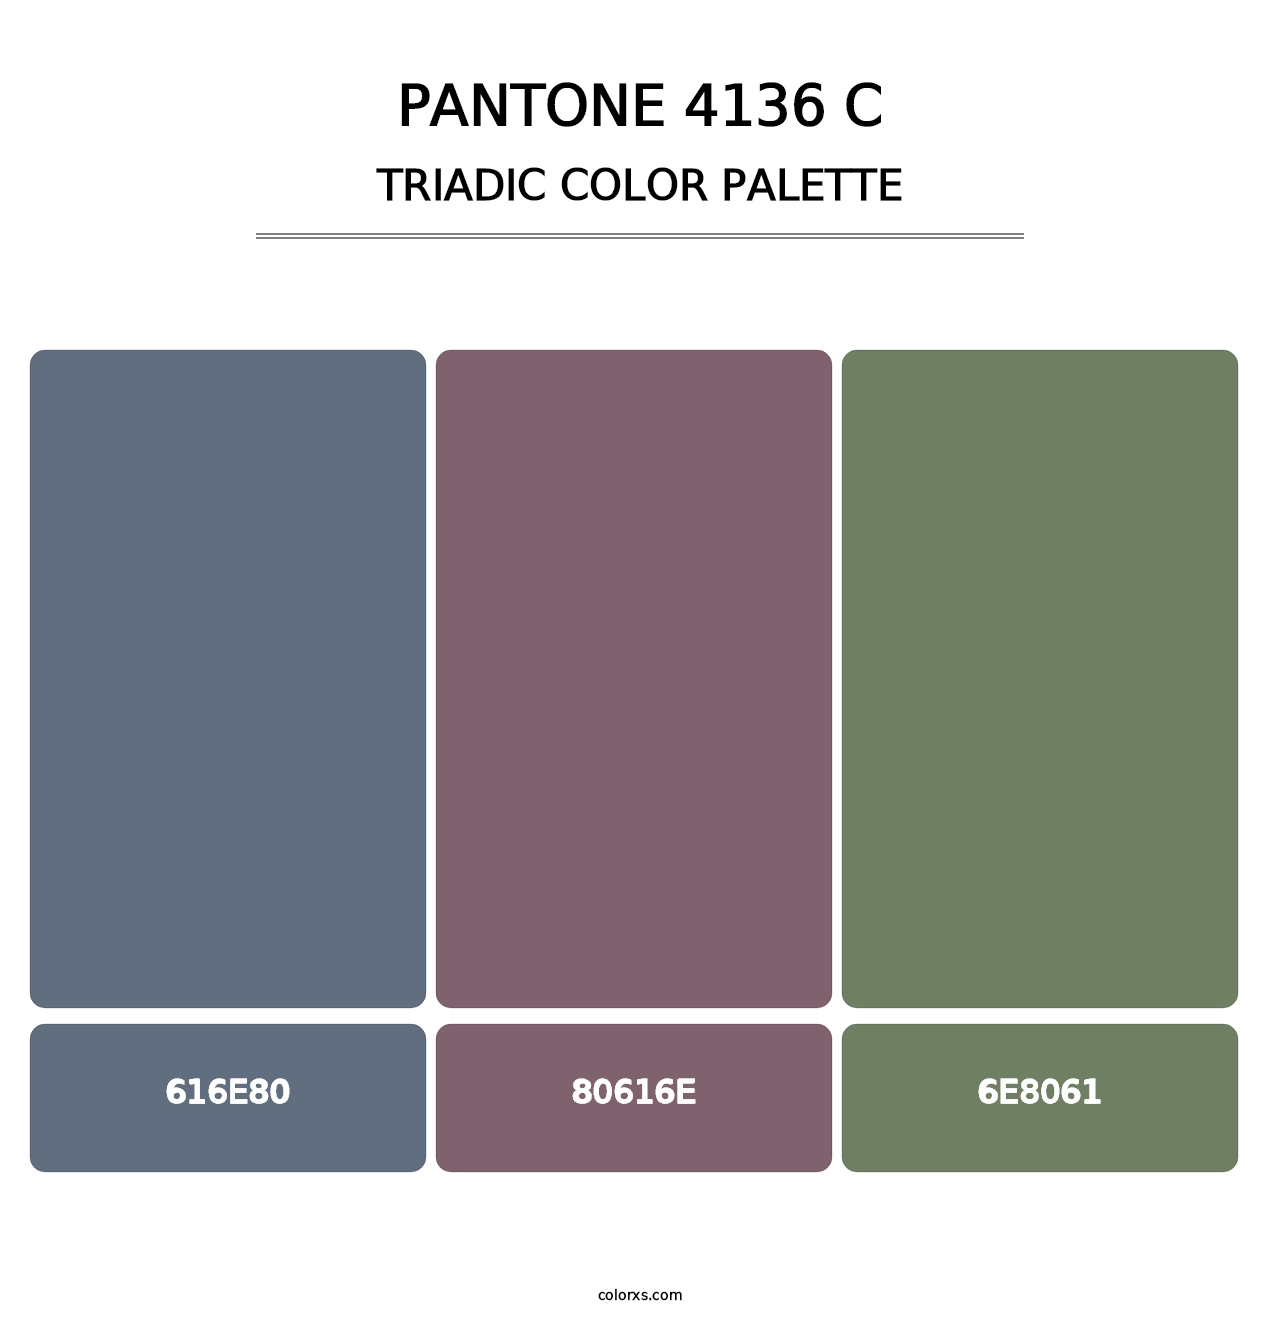 PANTONE 4136 C - Triadic Color Palette